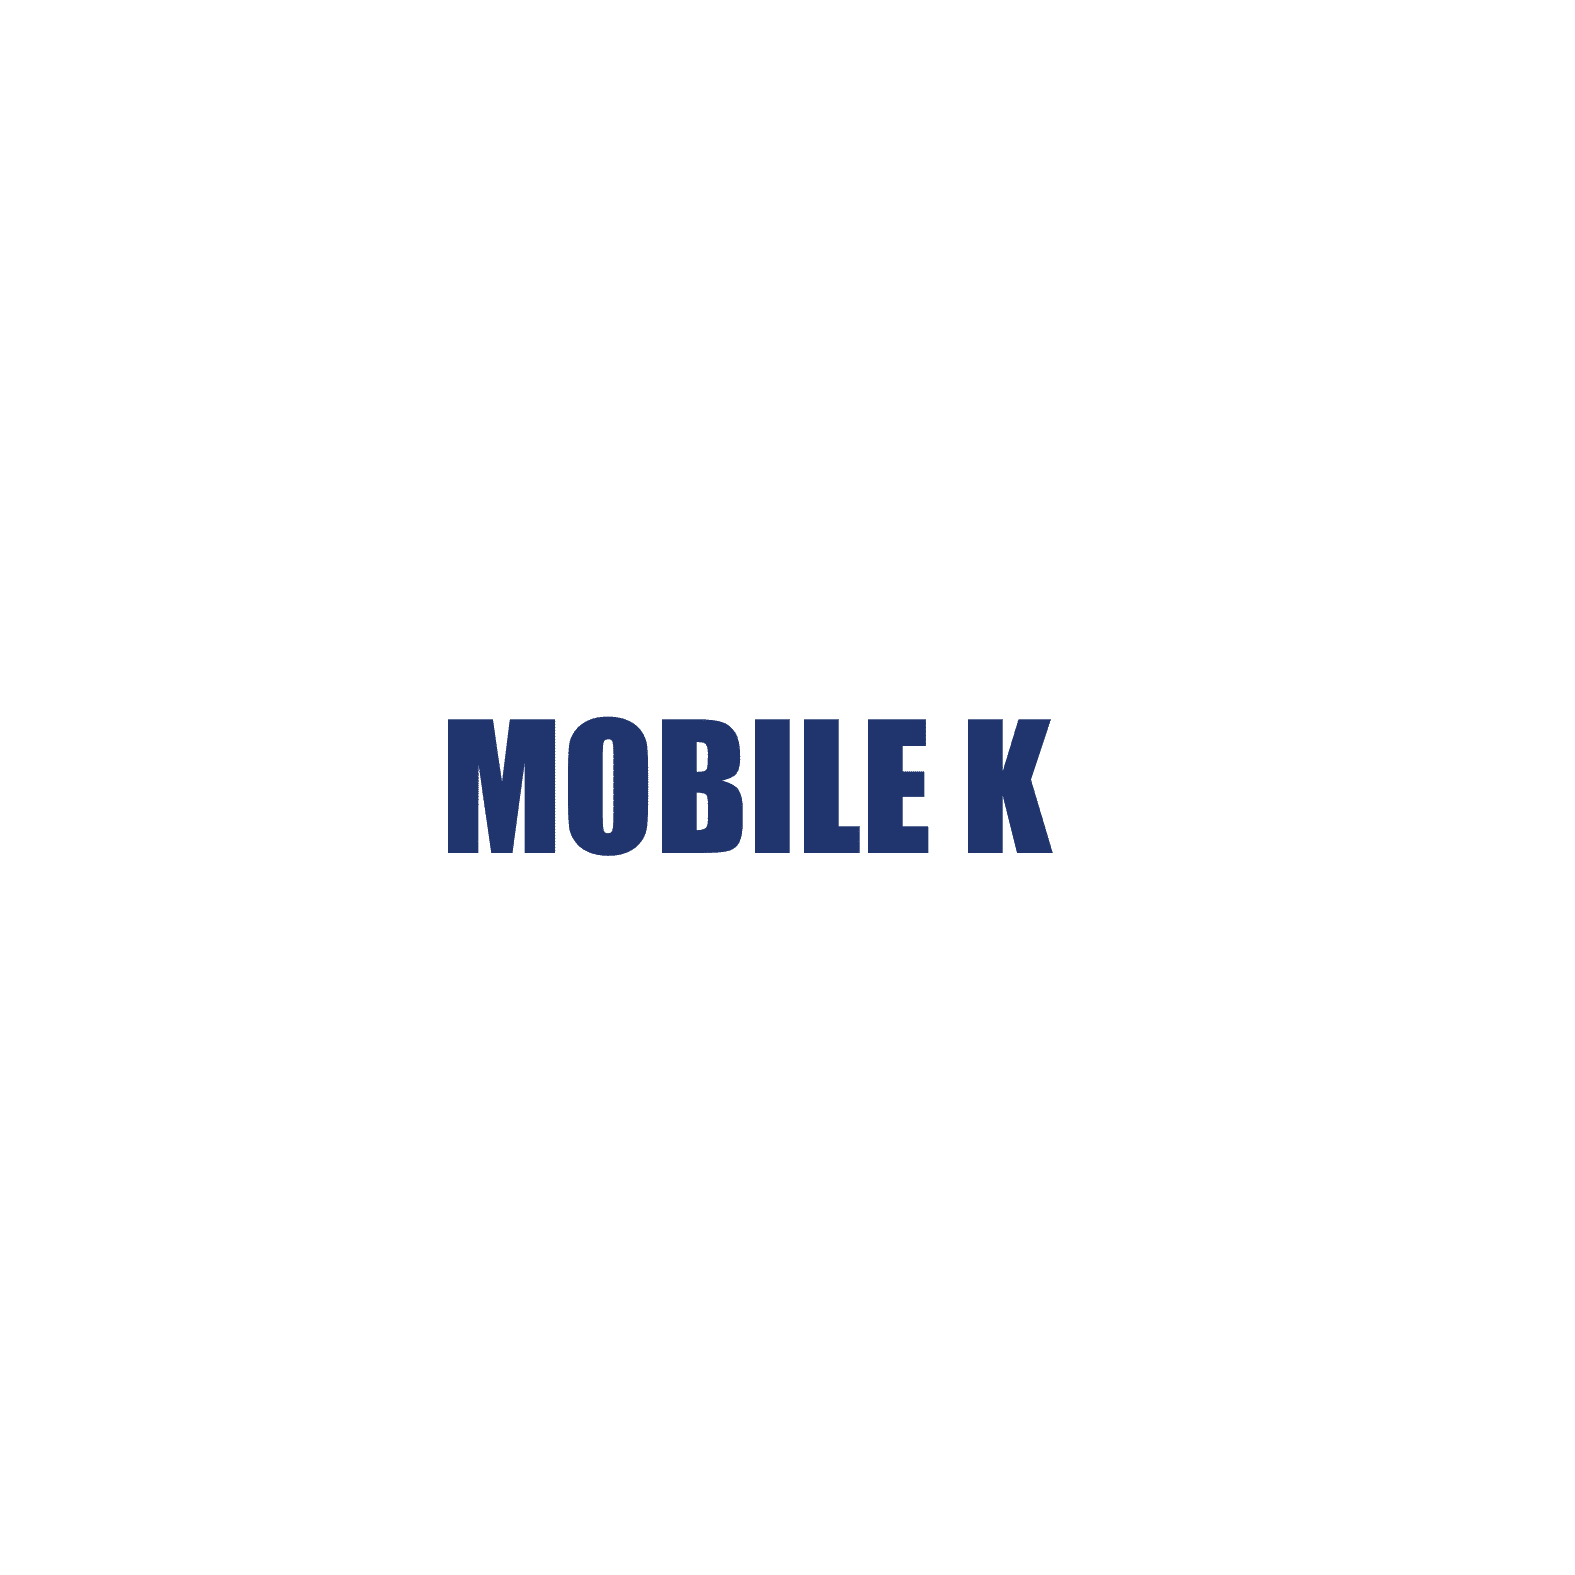 MOBILE K resmi